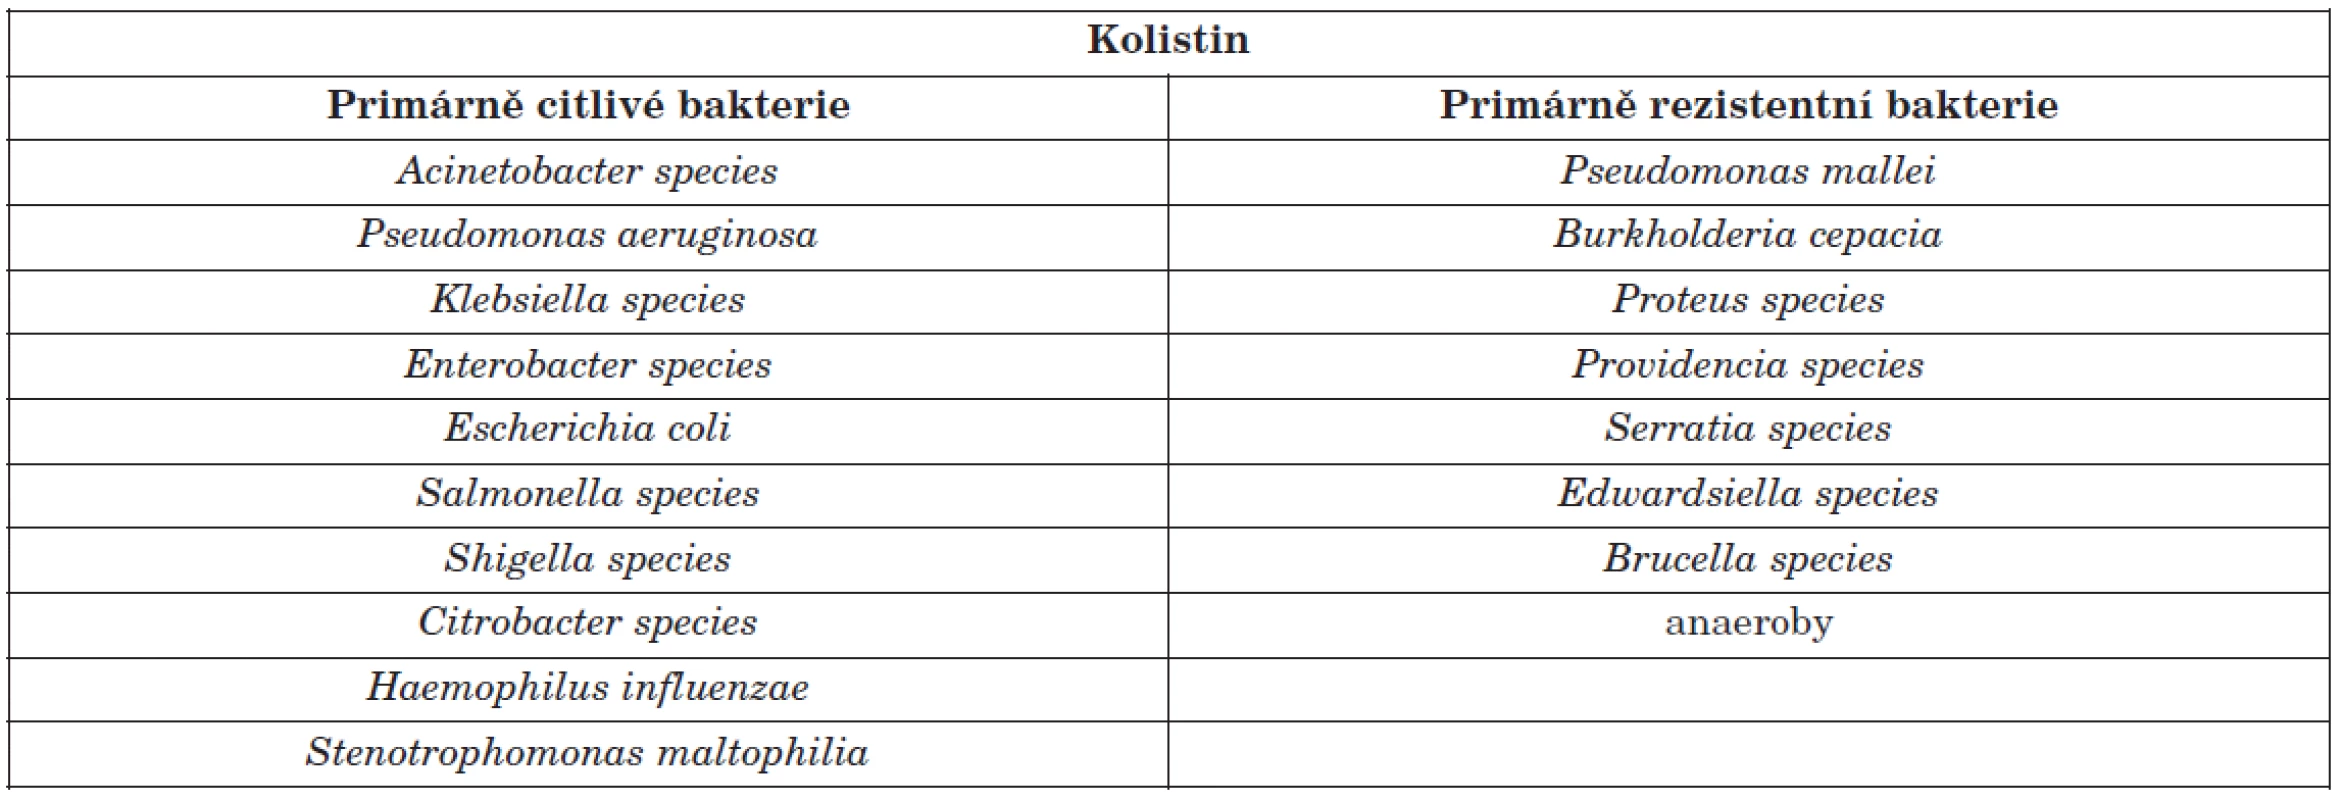 Klinicky nejvýznamnější kmeny bakterií citlivých a rezistentních ke kolistinu [15, 16, 17]
Table 1. Clinically most important colistin-susceptible and colistin-resistant bacterial strains [15, 16, 17]